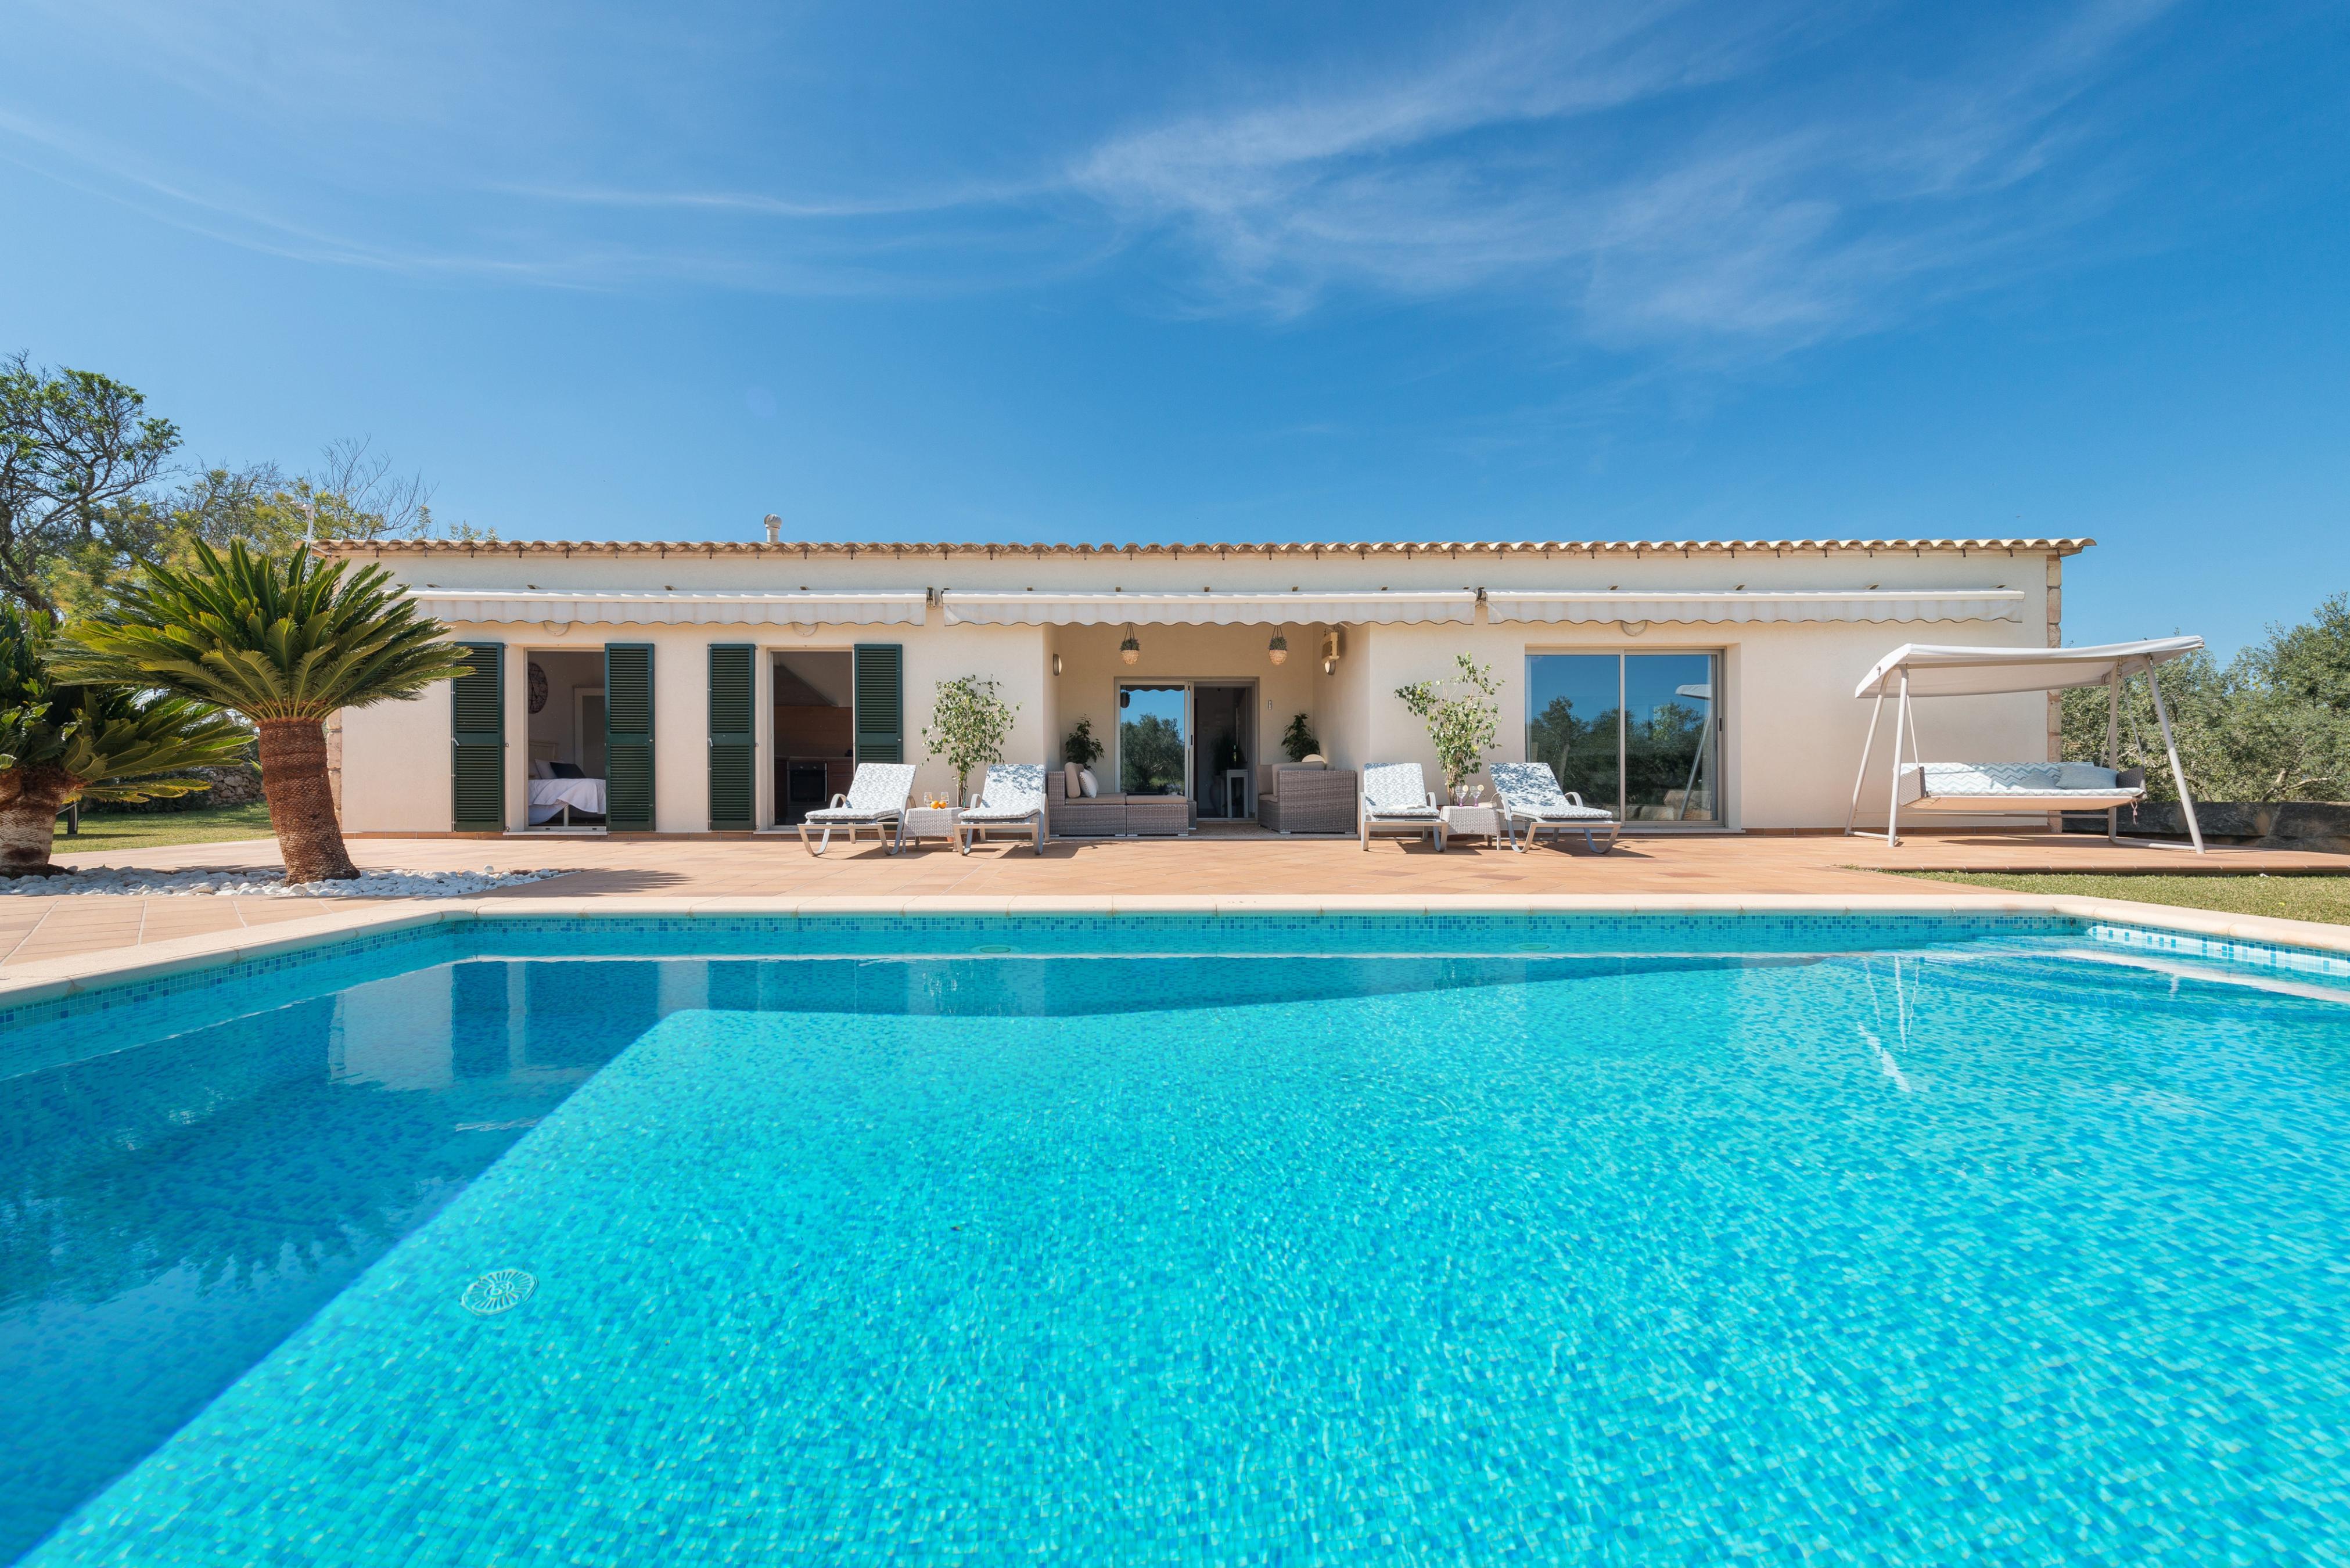 Property Image 1 - SA FINCA - Villa with private pool in MURO. Free WiFi